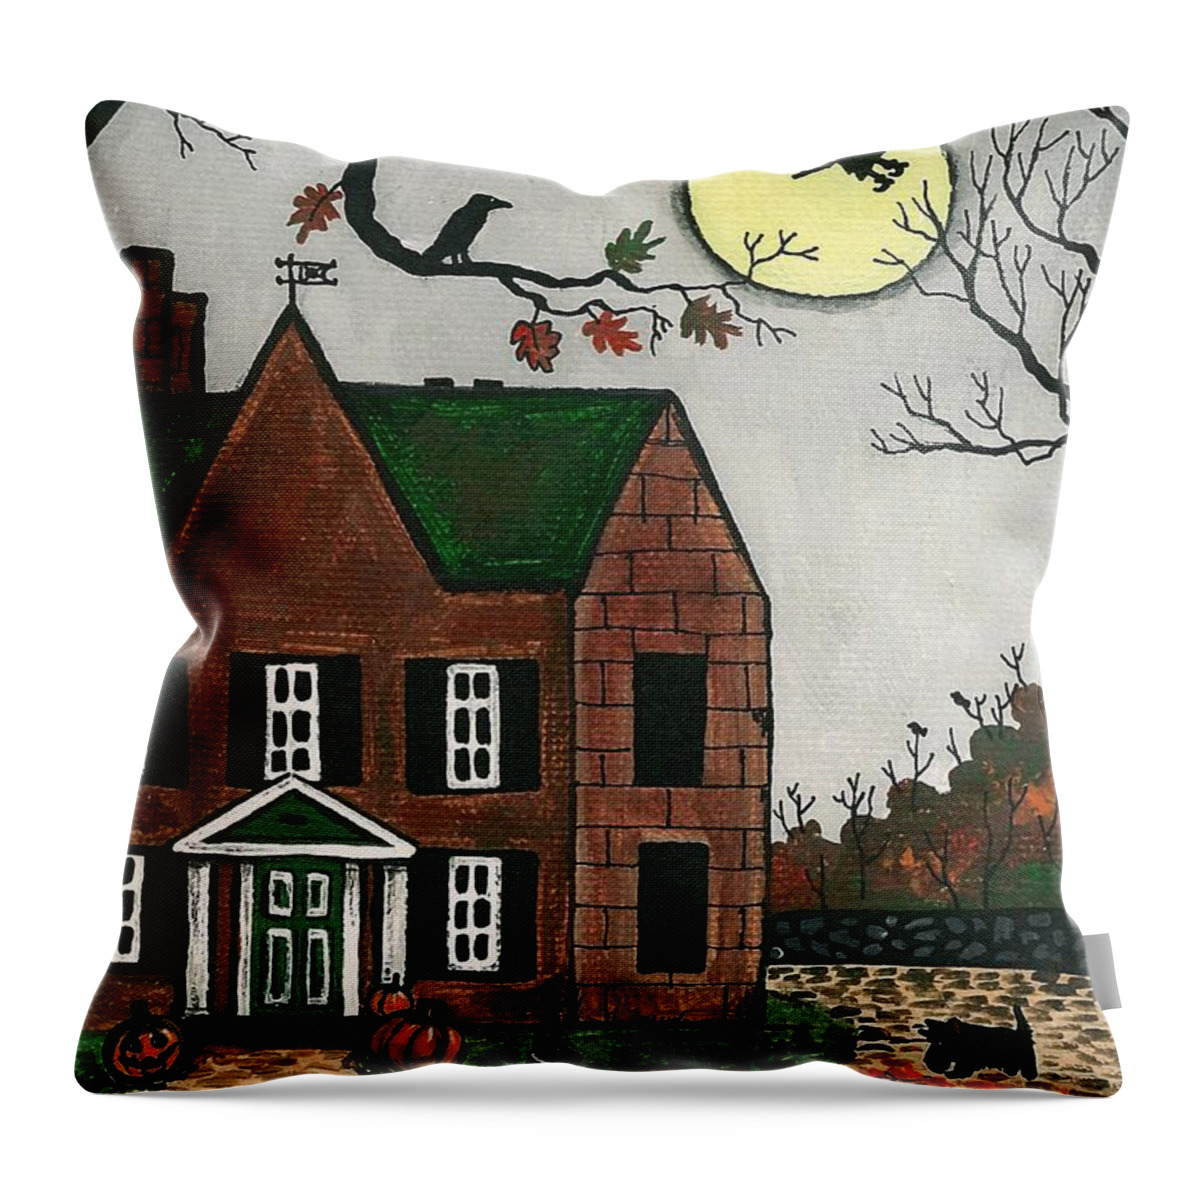 Halloween Throw Pillow featuring the painting Autumn Scotties by Margaryta Yermolayeva